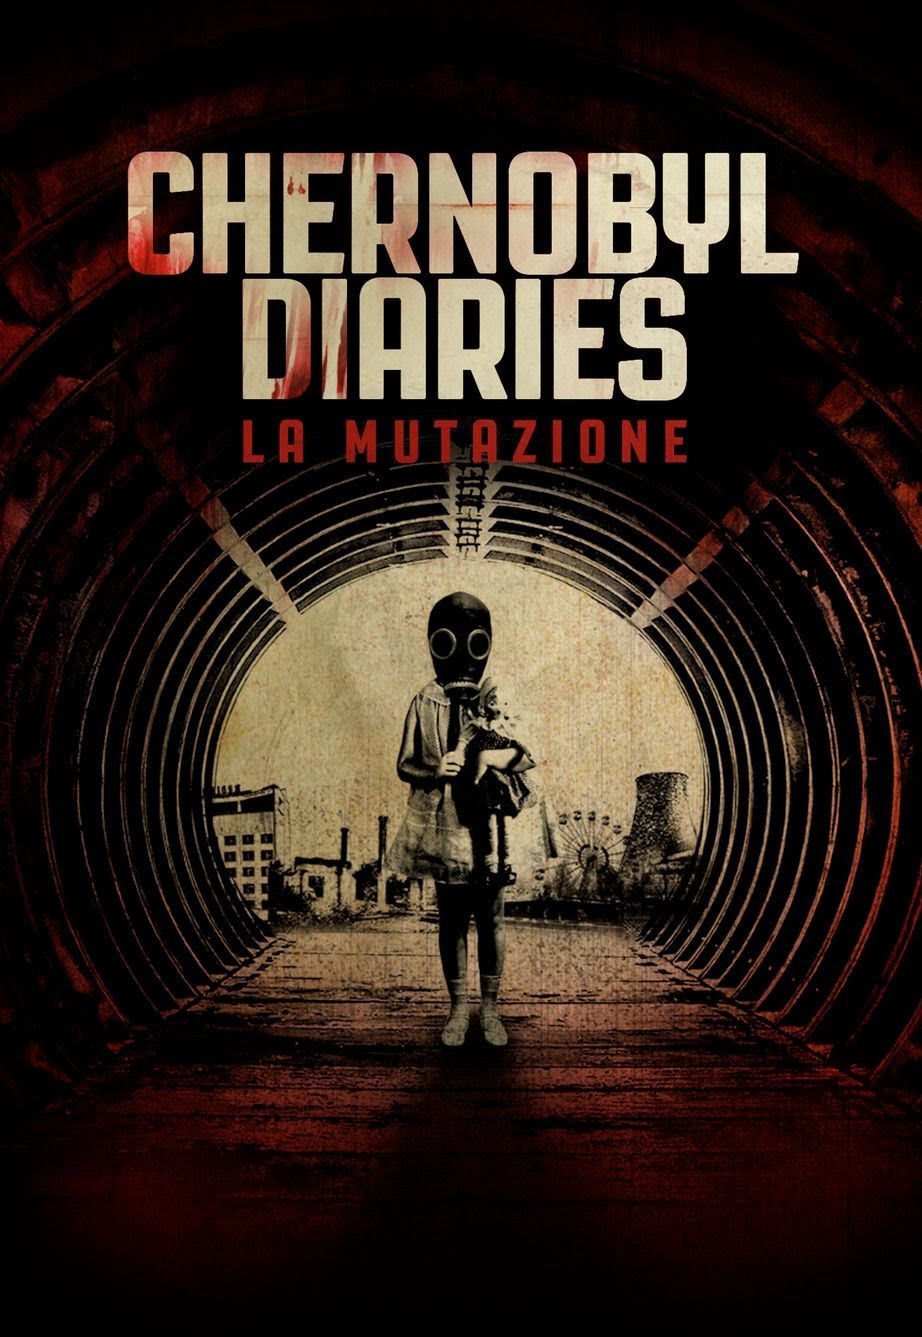 Chernobyl Diaries – La mutazione [HD] (2012)